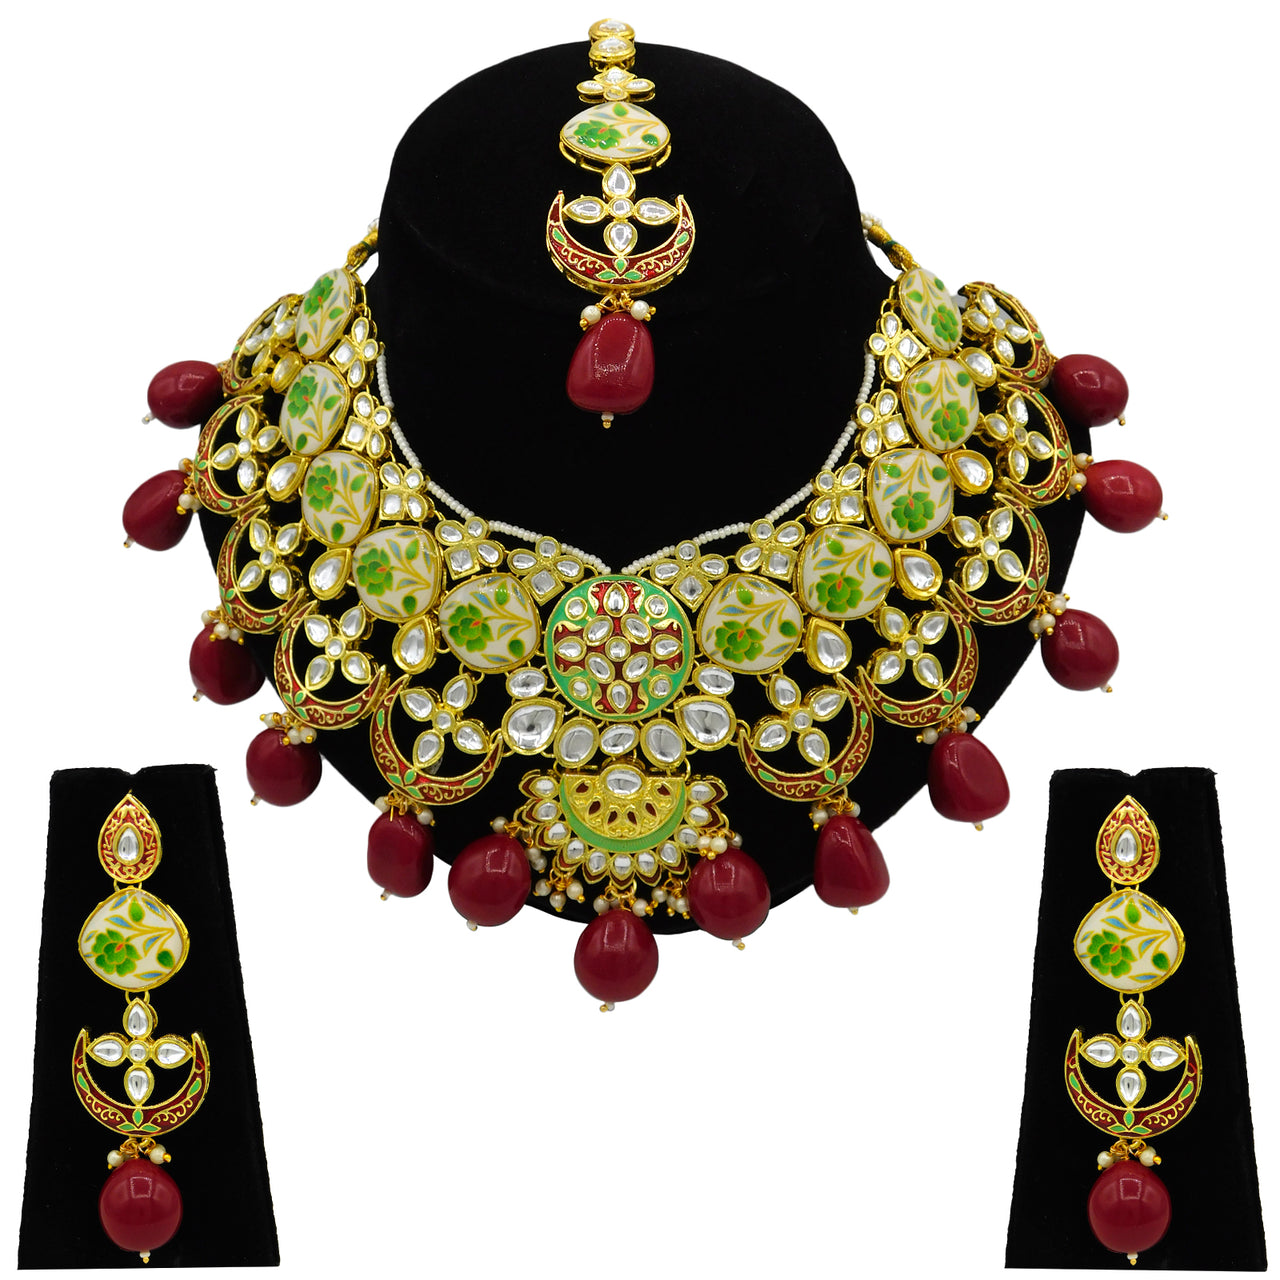 Sujwel Gold Plated Kundan Floral Design Choker Necklace For Women (08-0439) - Sujwel